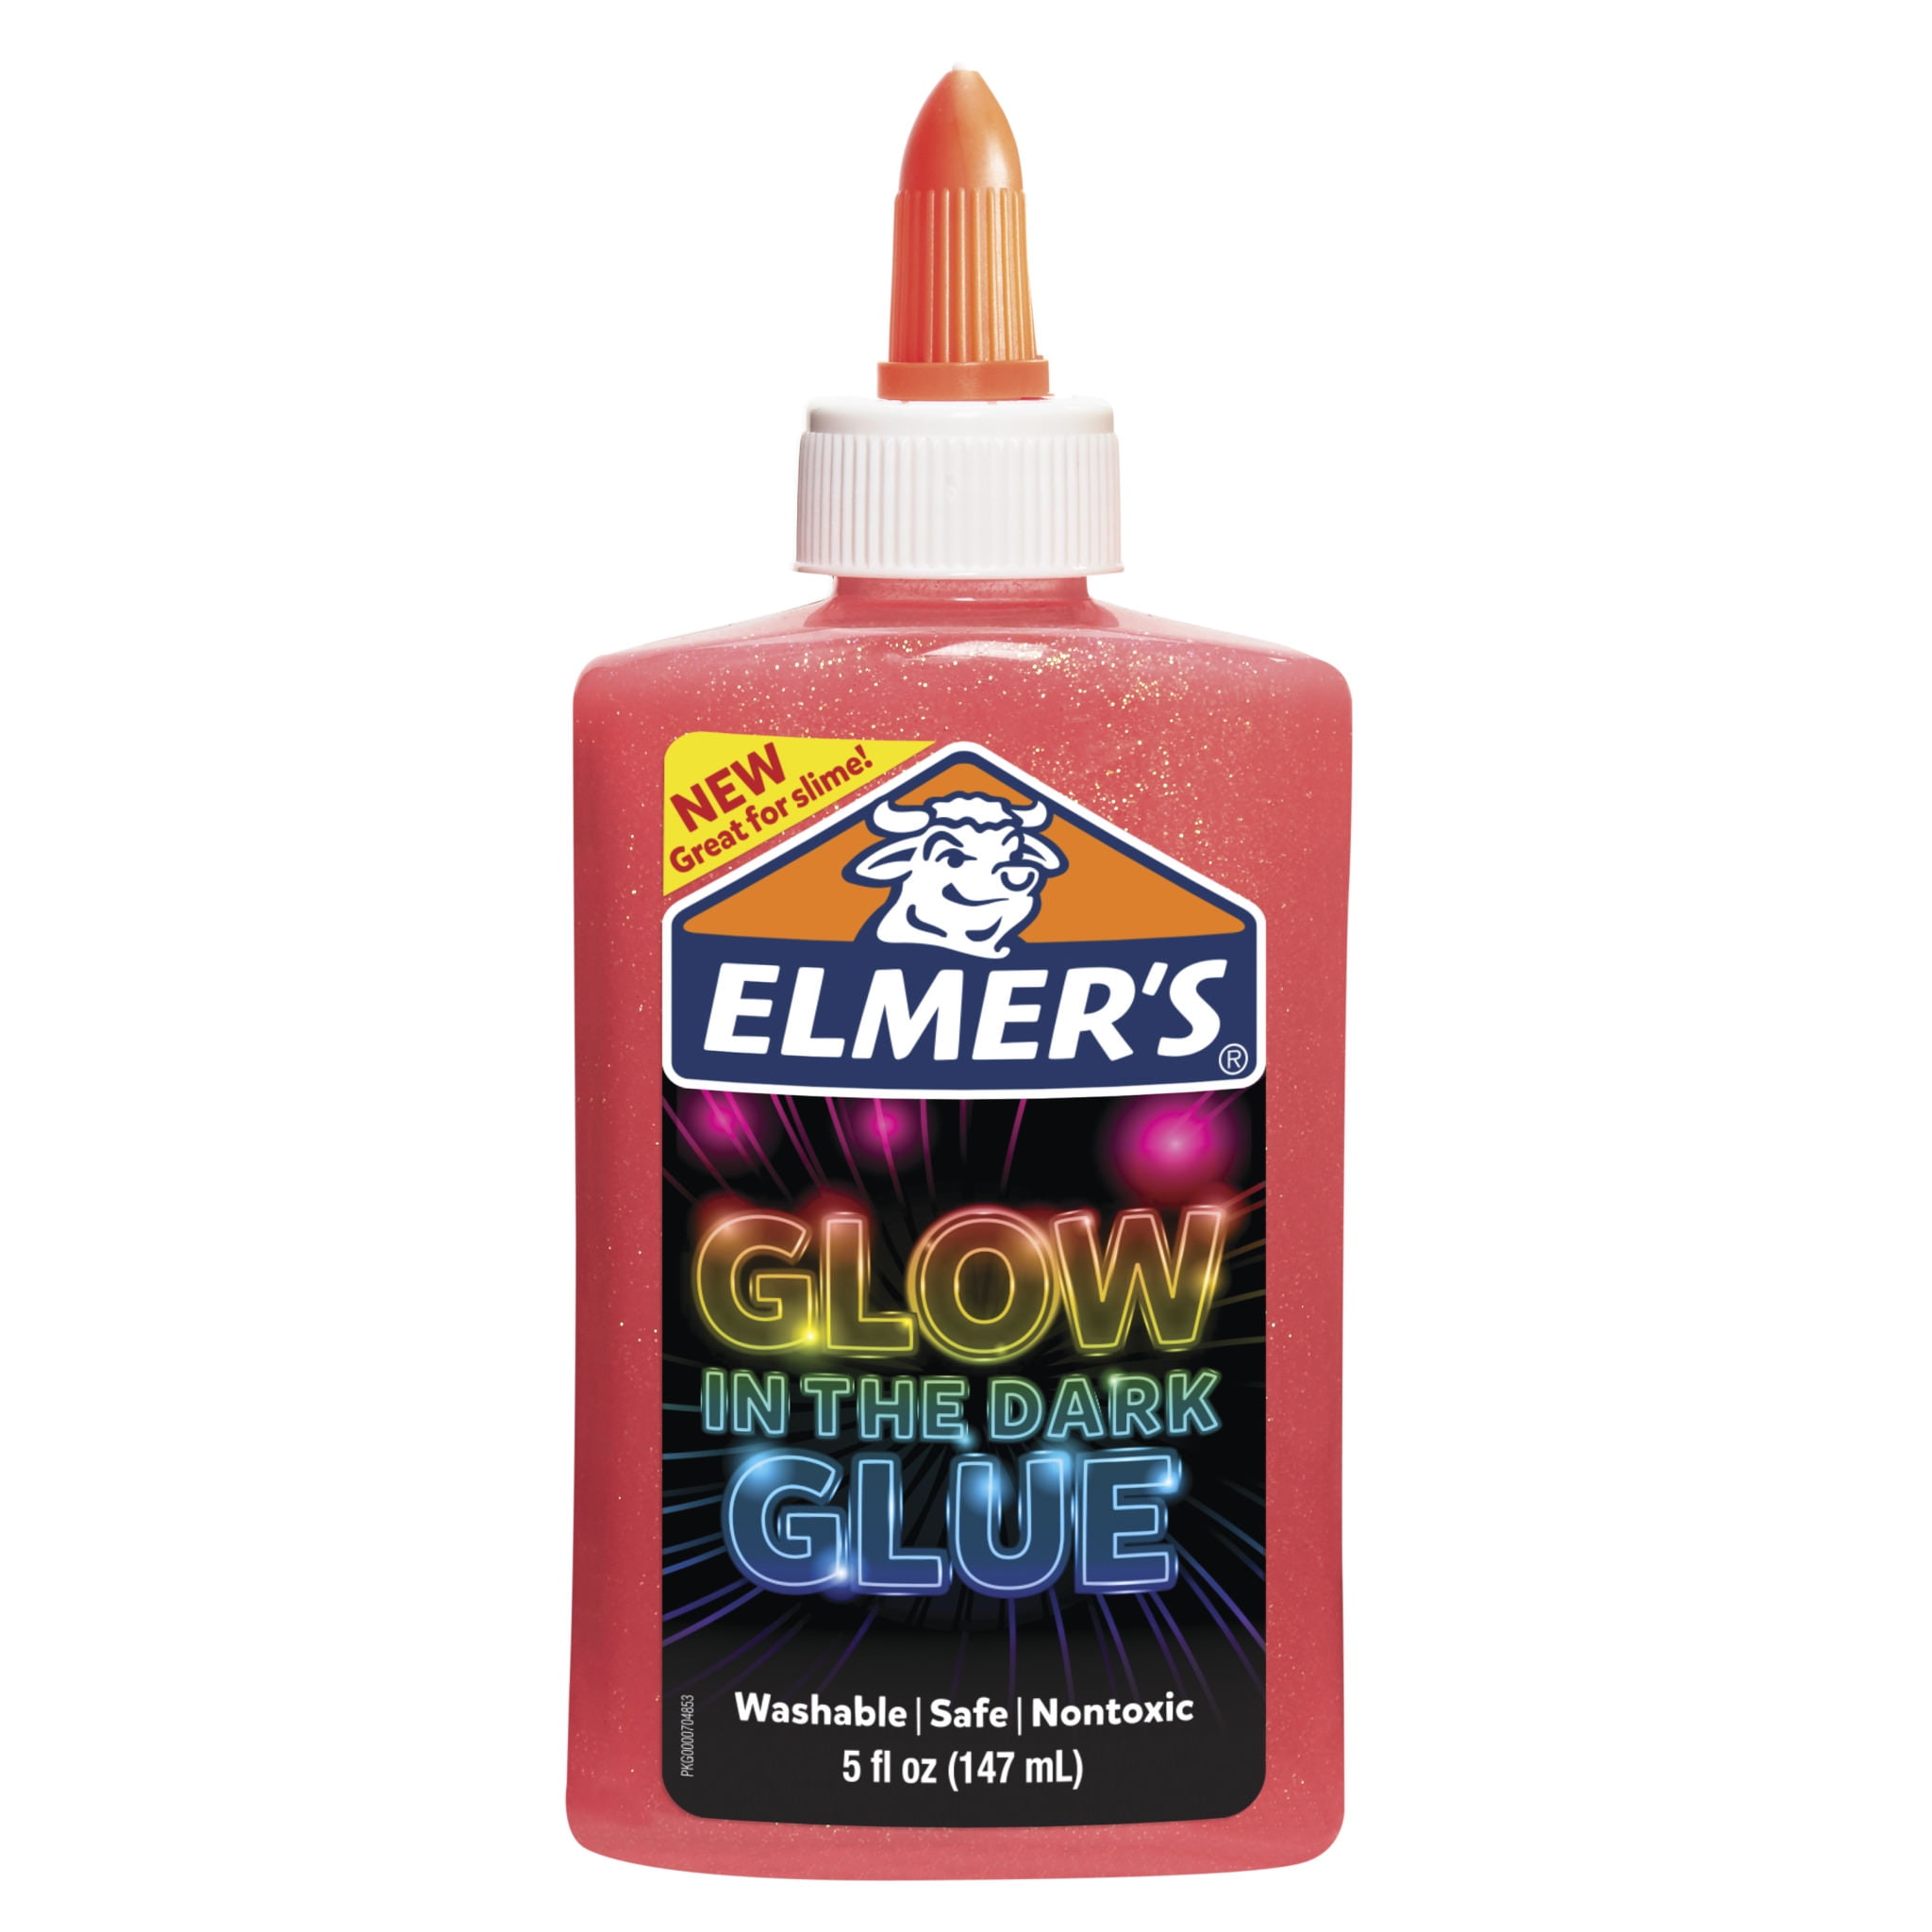 Basics GLOW in the Dark Glue vs Elmer's GLOW in the Glue 